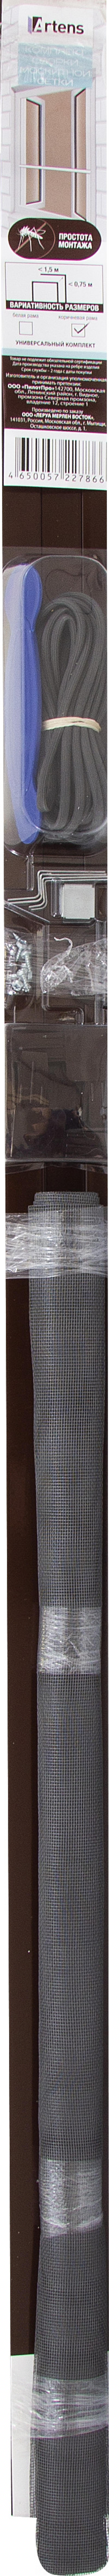 Рамочная москитная сетка Artens для окна 150x75 см коричневая (комплект для сборки)